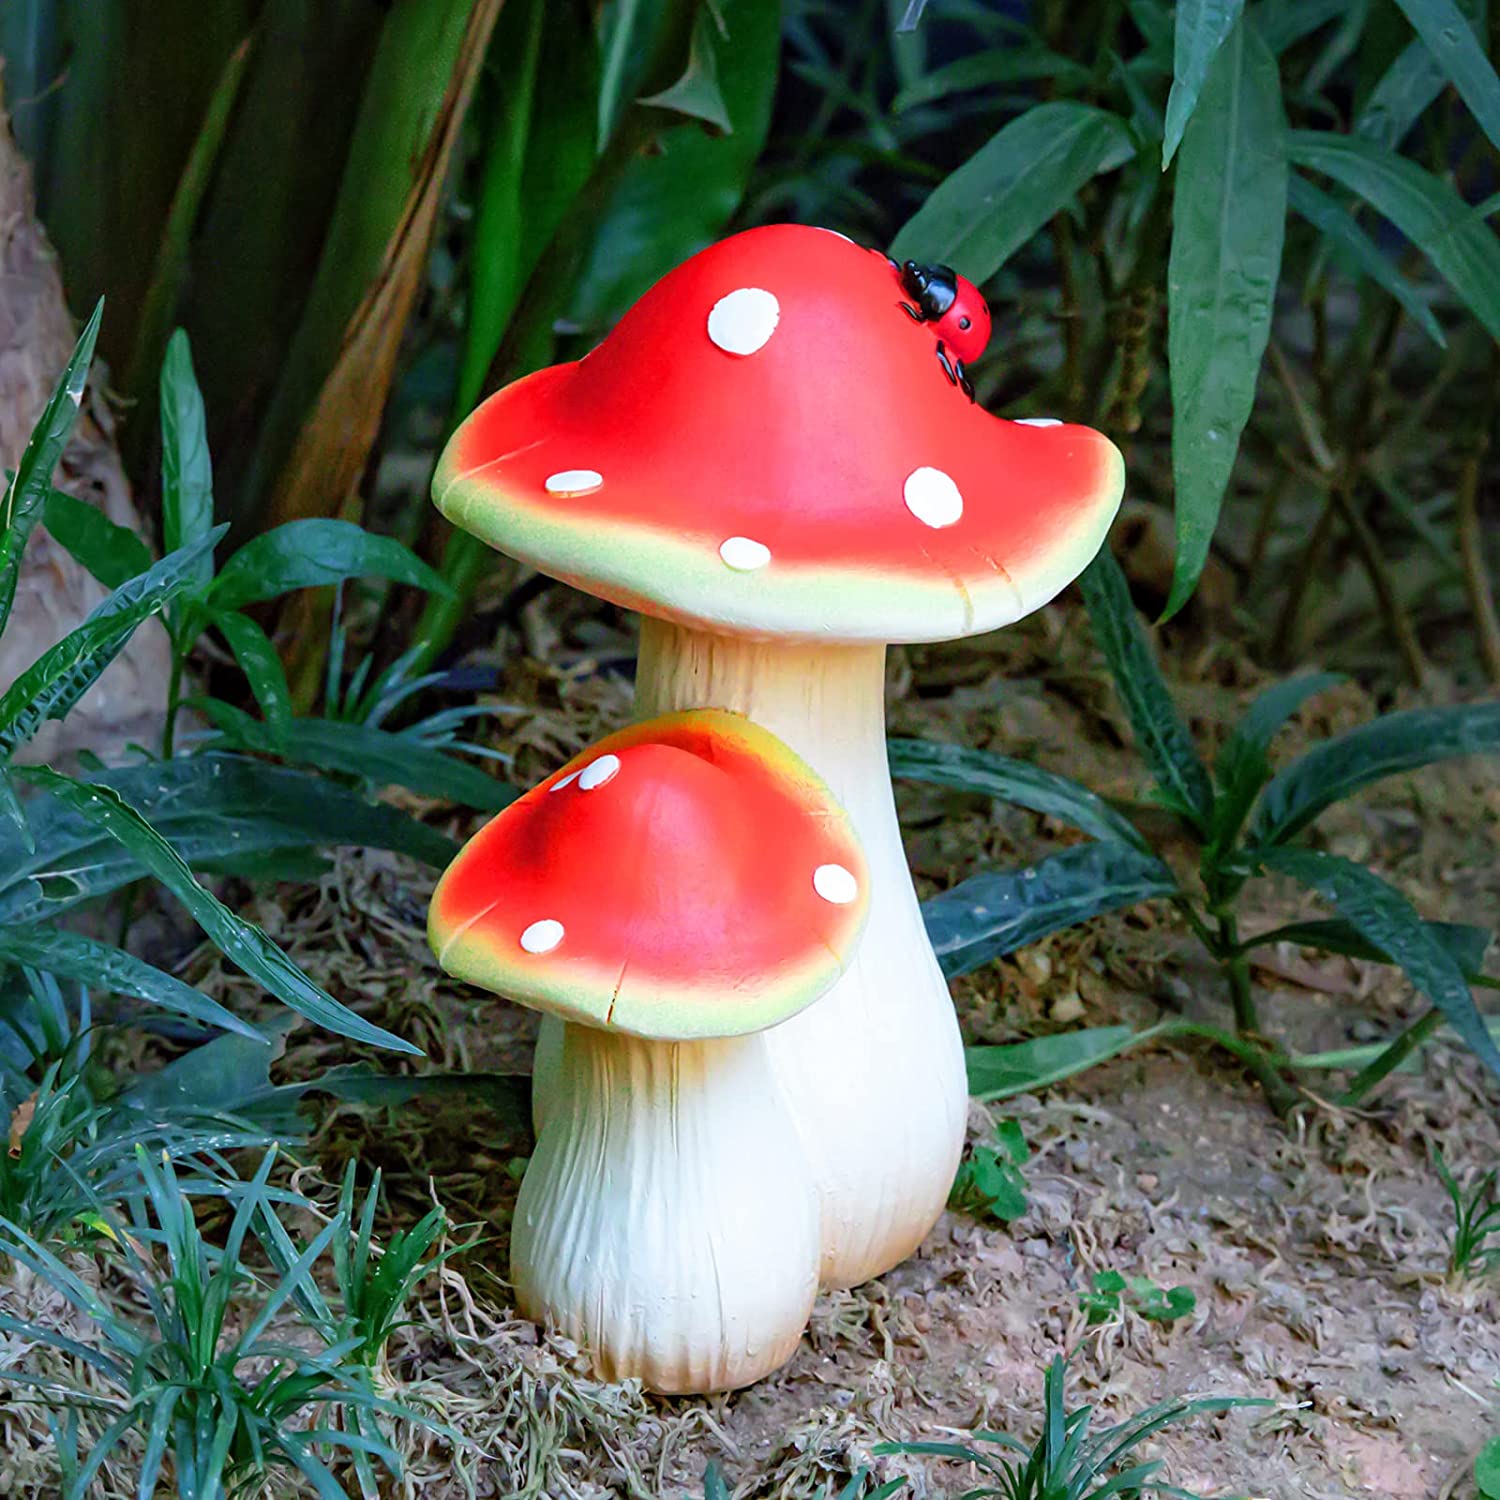 Garden Villa Garden Outdoor Resin Mushroom Decoration